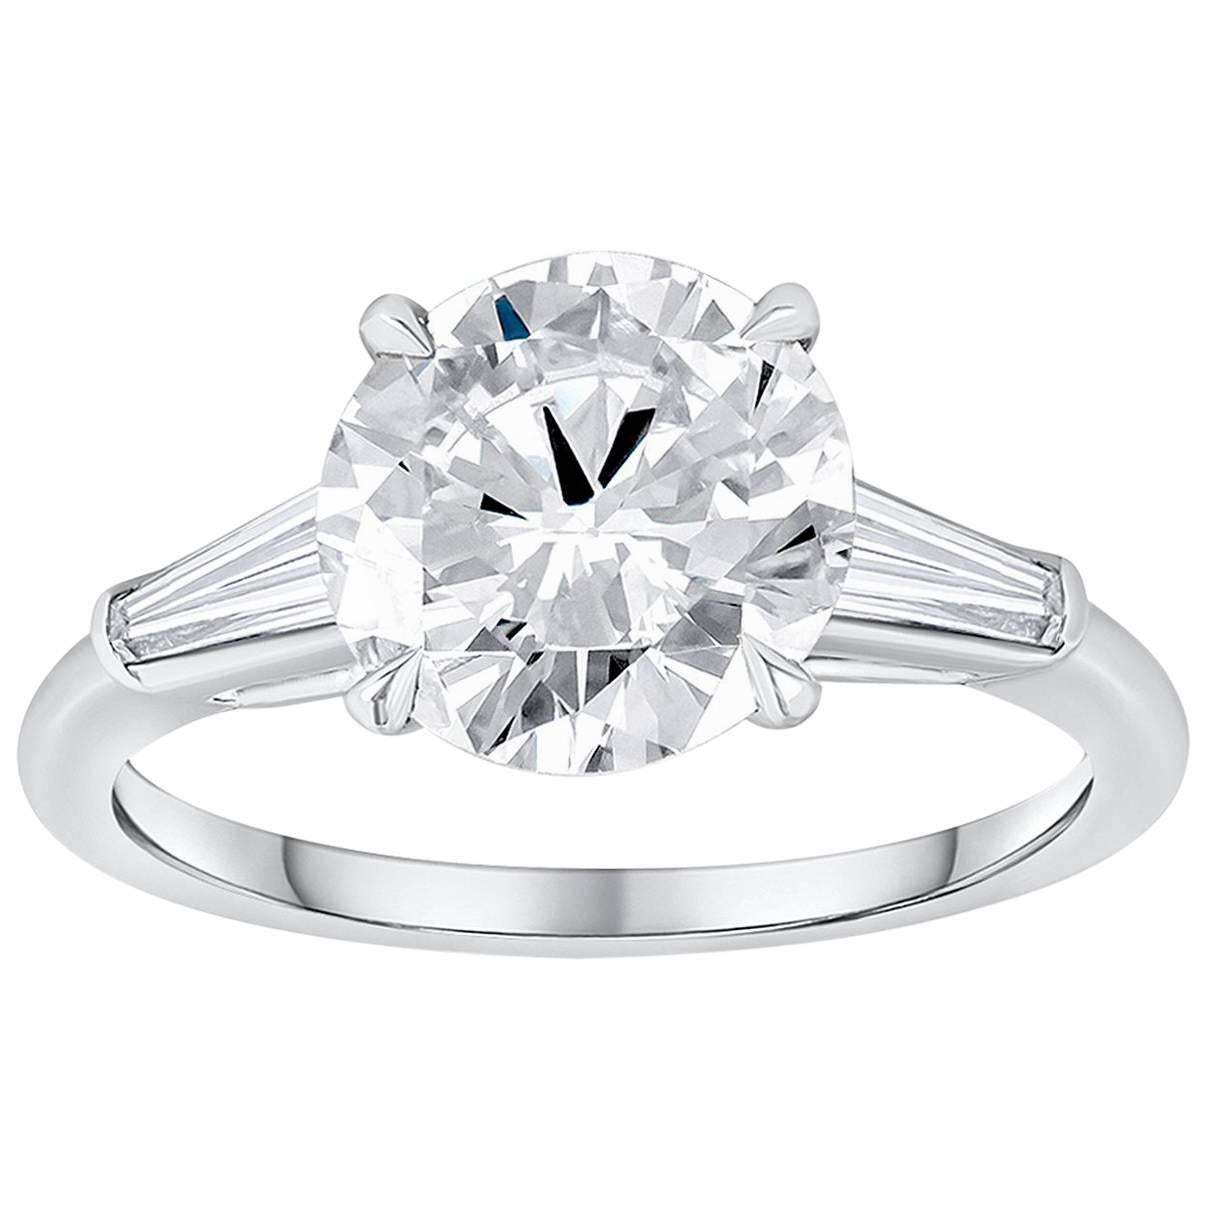 2.56 Carat Round Diamond Three-Stone Engagement Ring